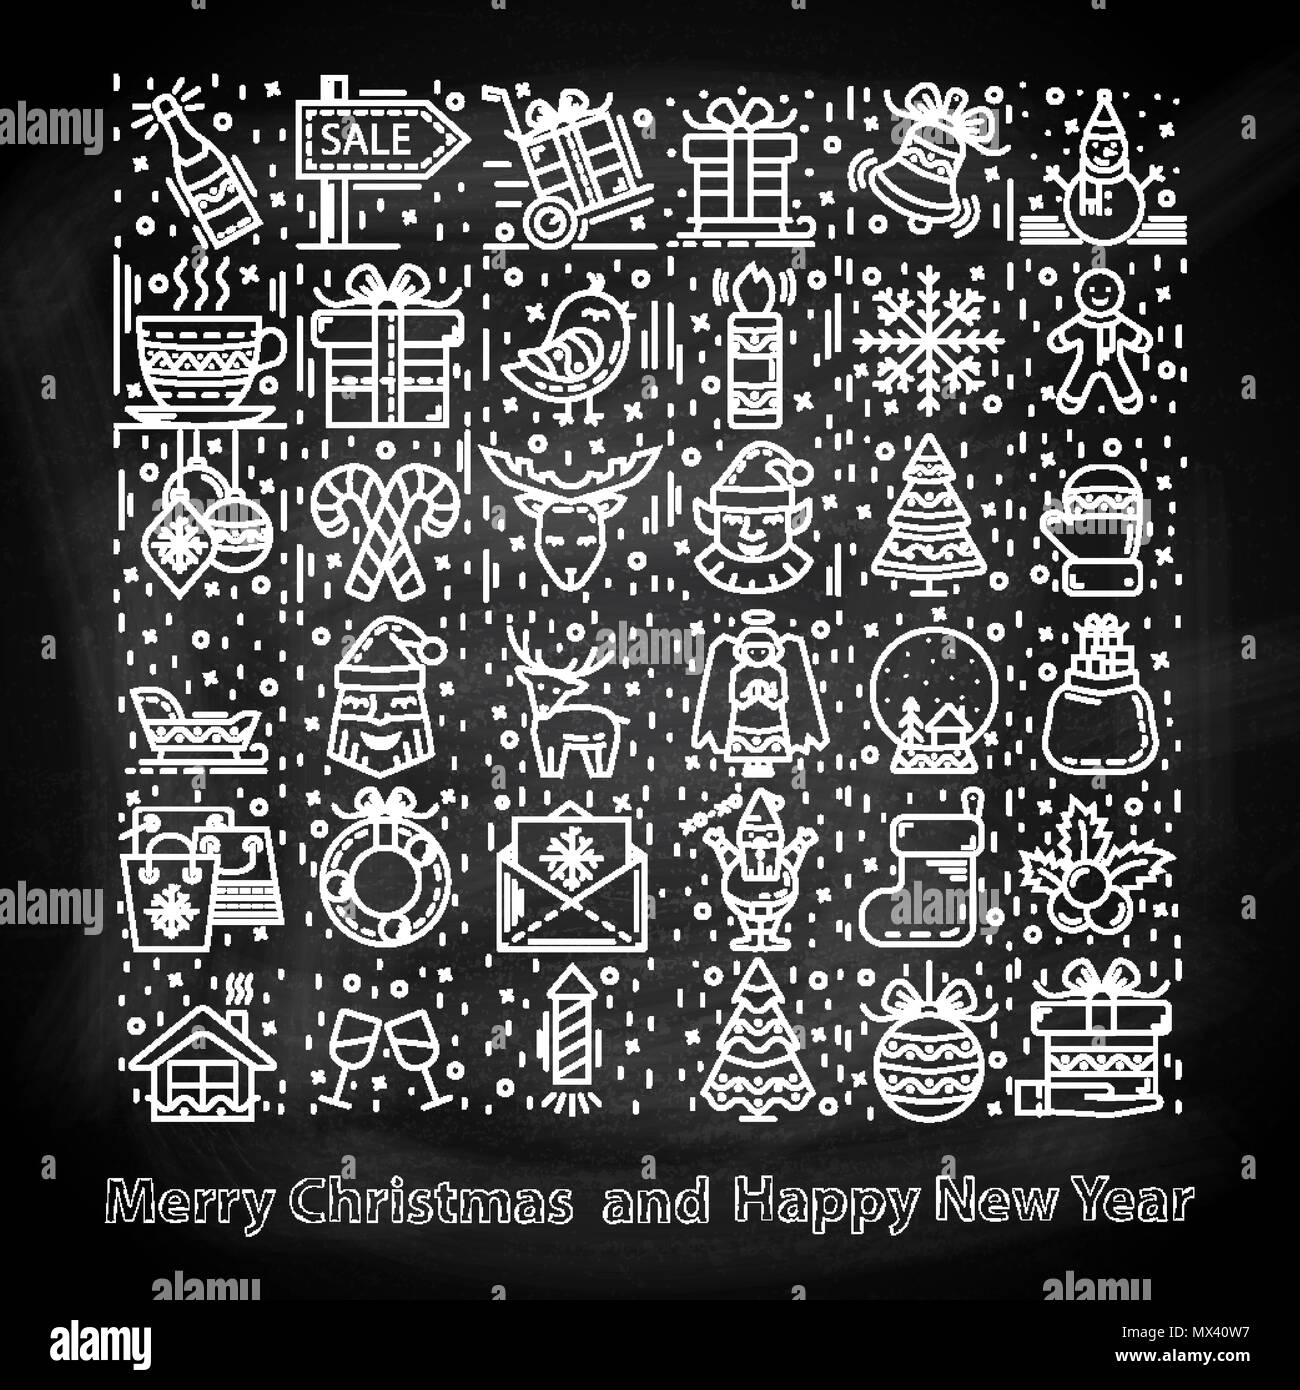 Bonne Année et joyeux Noël Icons set sur un tableau, avec le Père Noël,arbre de Noël,bonhomme de neige,bonbons,bateau,chambre,patins à glace,cadeaux,peut,flocon Illustration de Vecteur